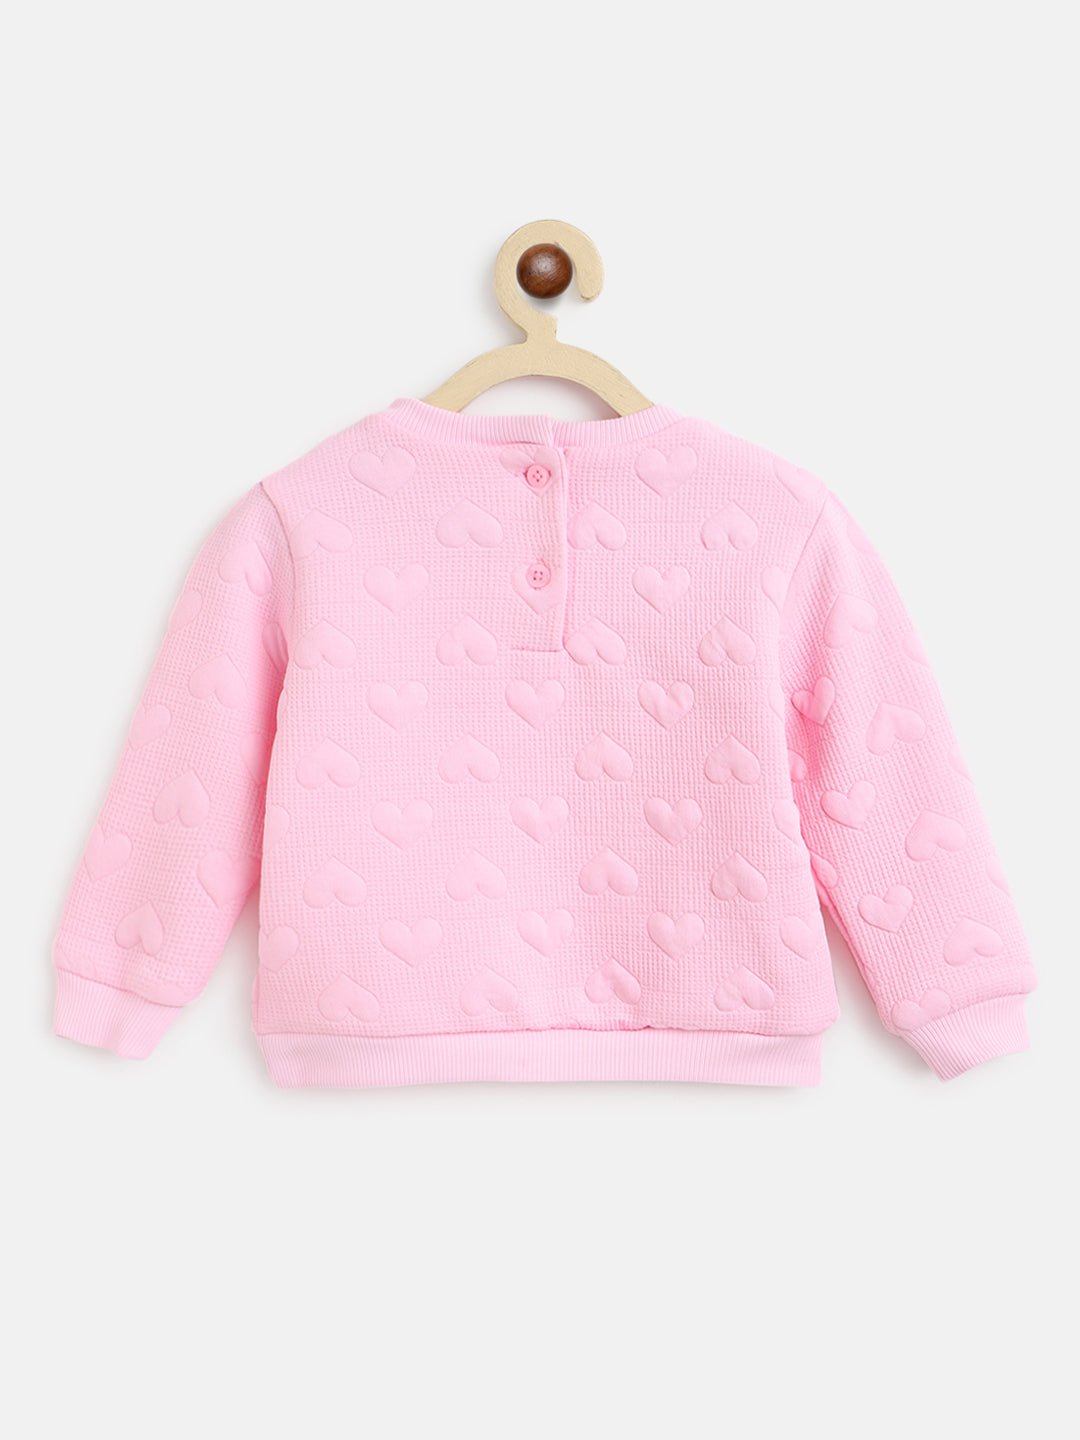 Nautinati Girls Pink Solid Sweatshirt